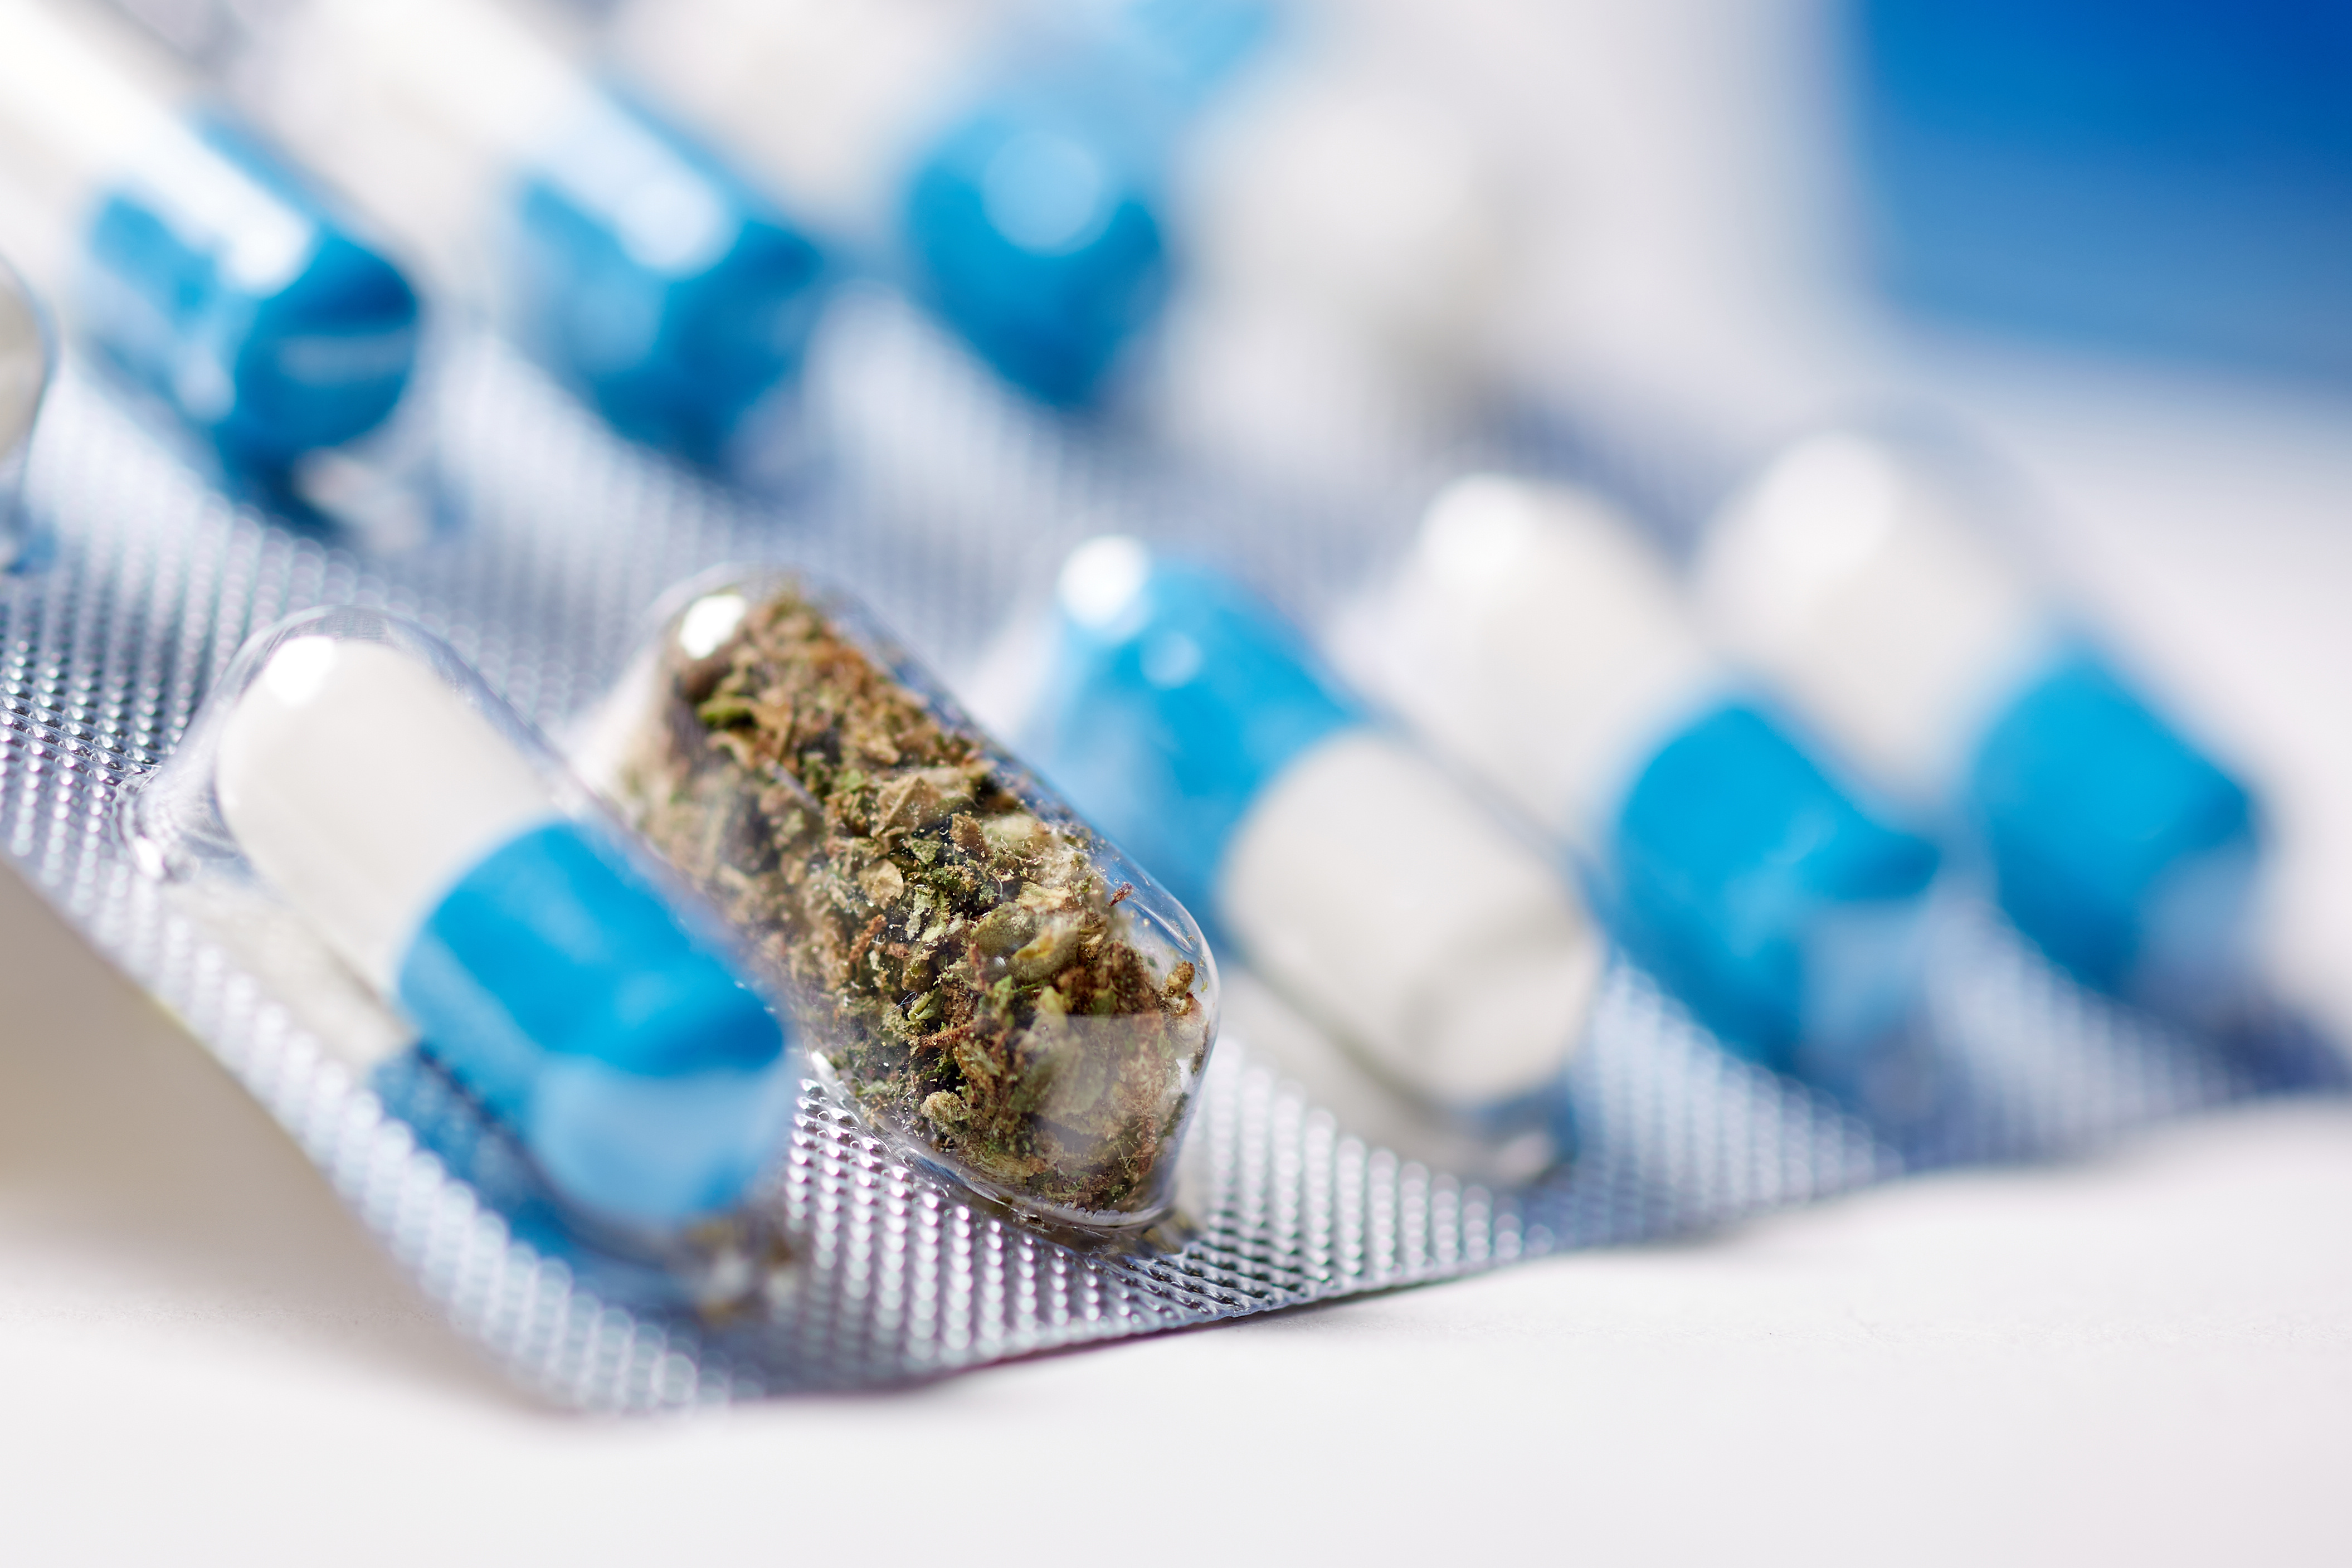 Le sujet reste débattu : le cannabis est-il une partie de la solution à la crise des opioïdes ? (Visuel Adobe Stock 211904220)